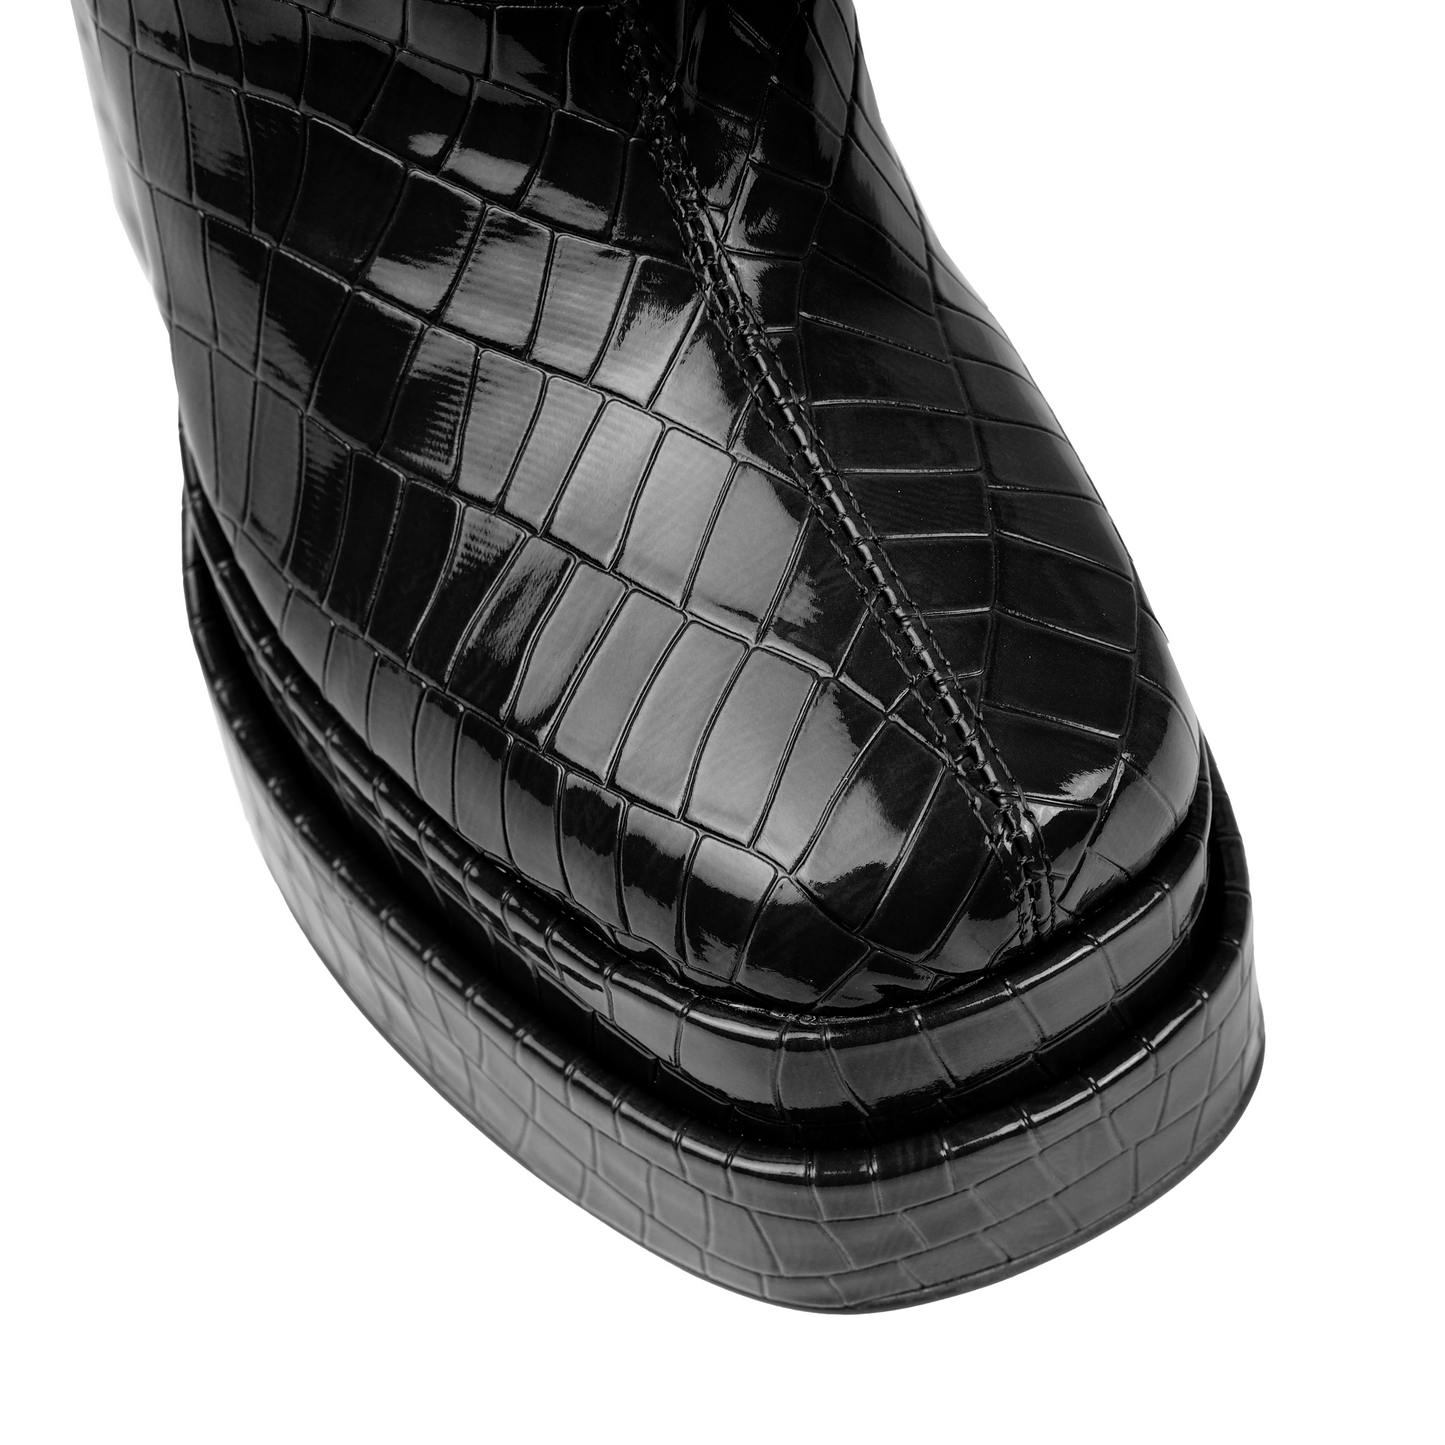 Croc Black Double Platform Ankle Boots